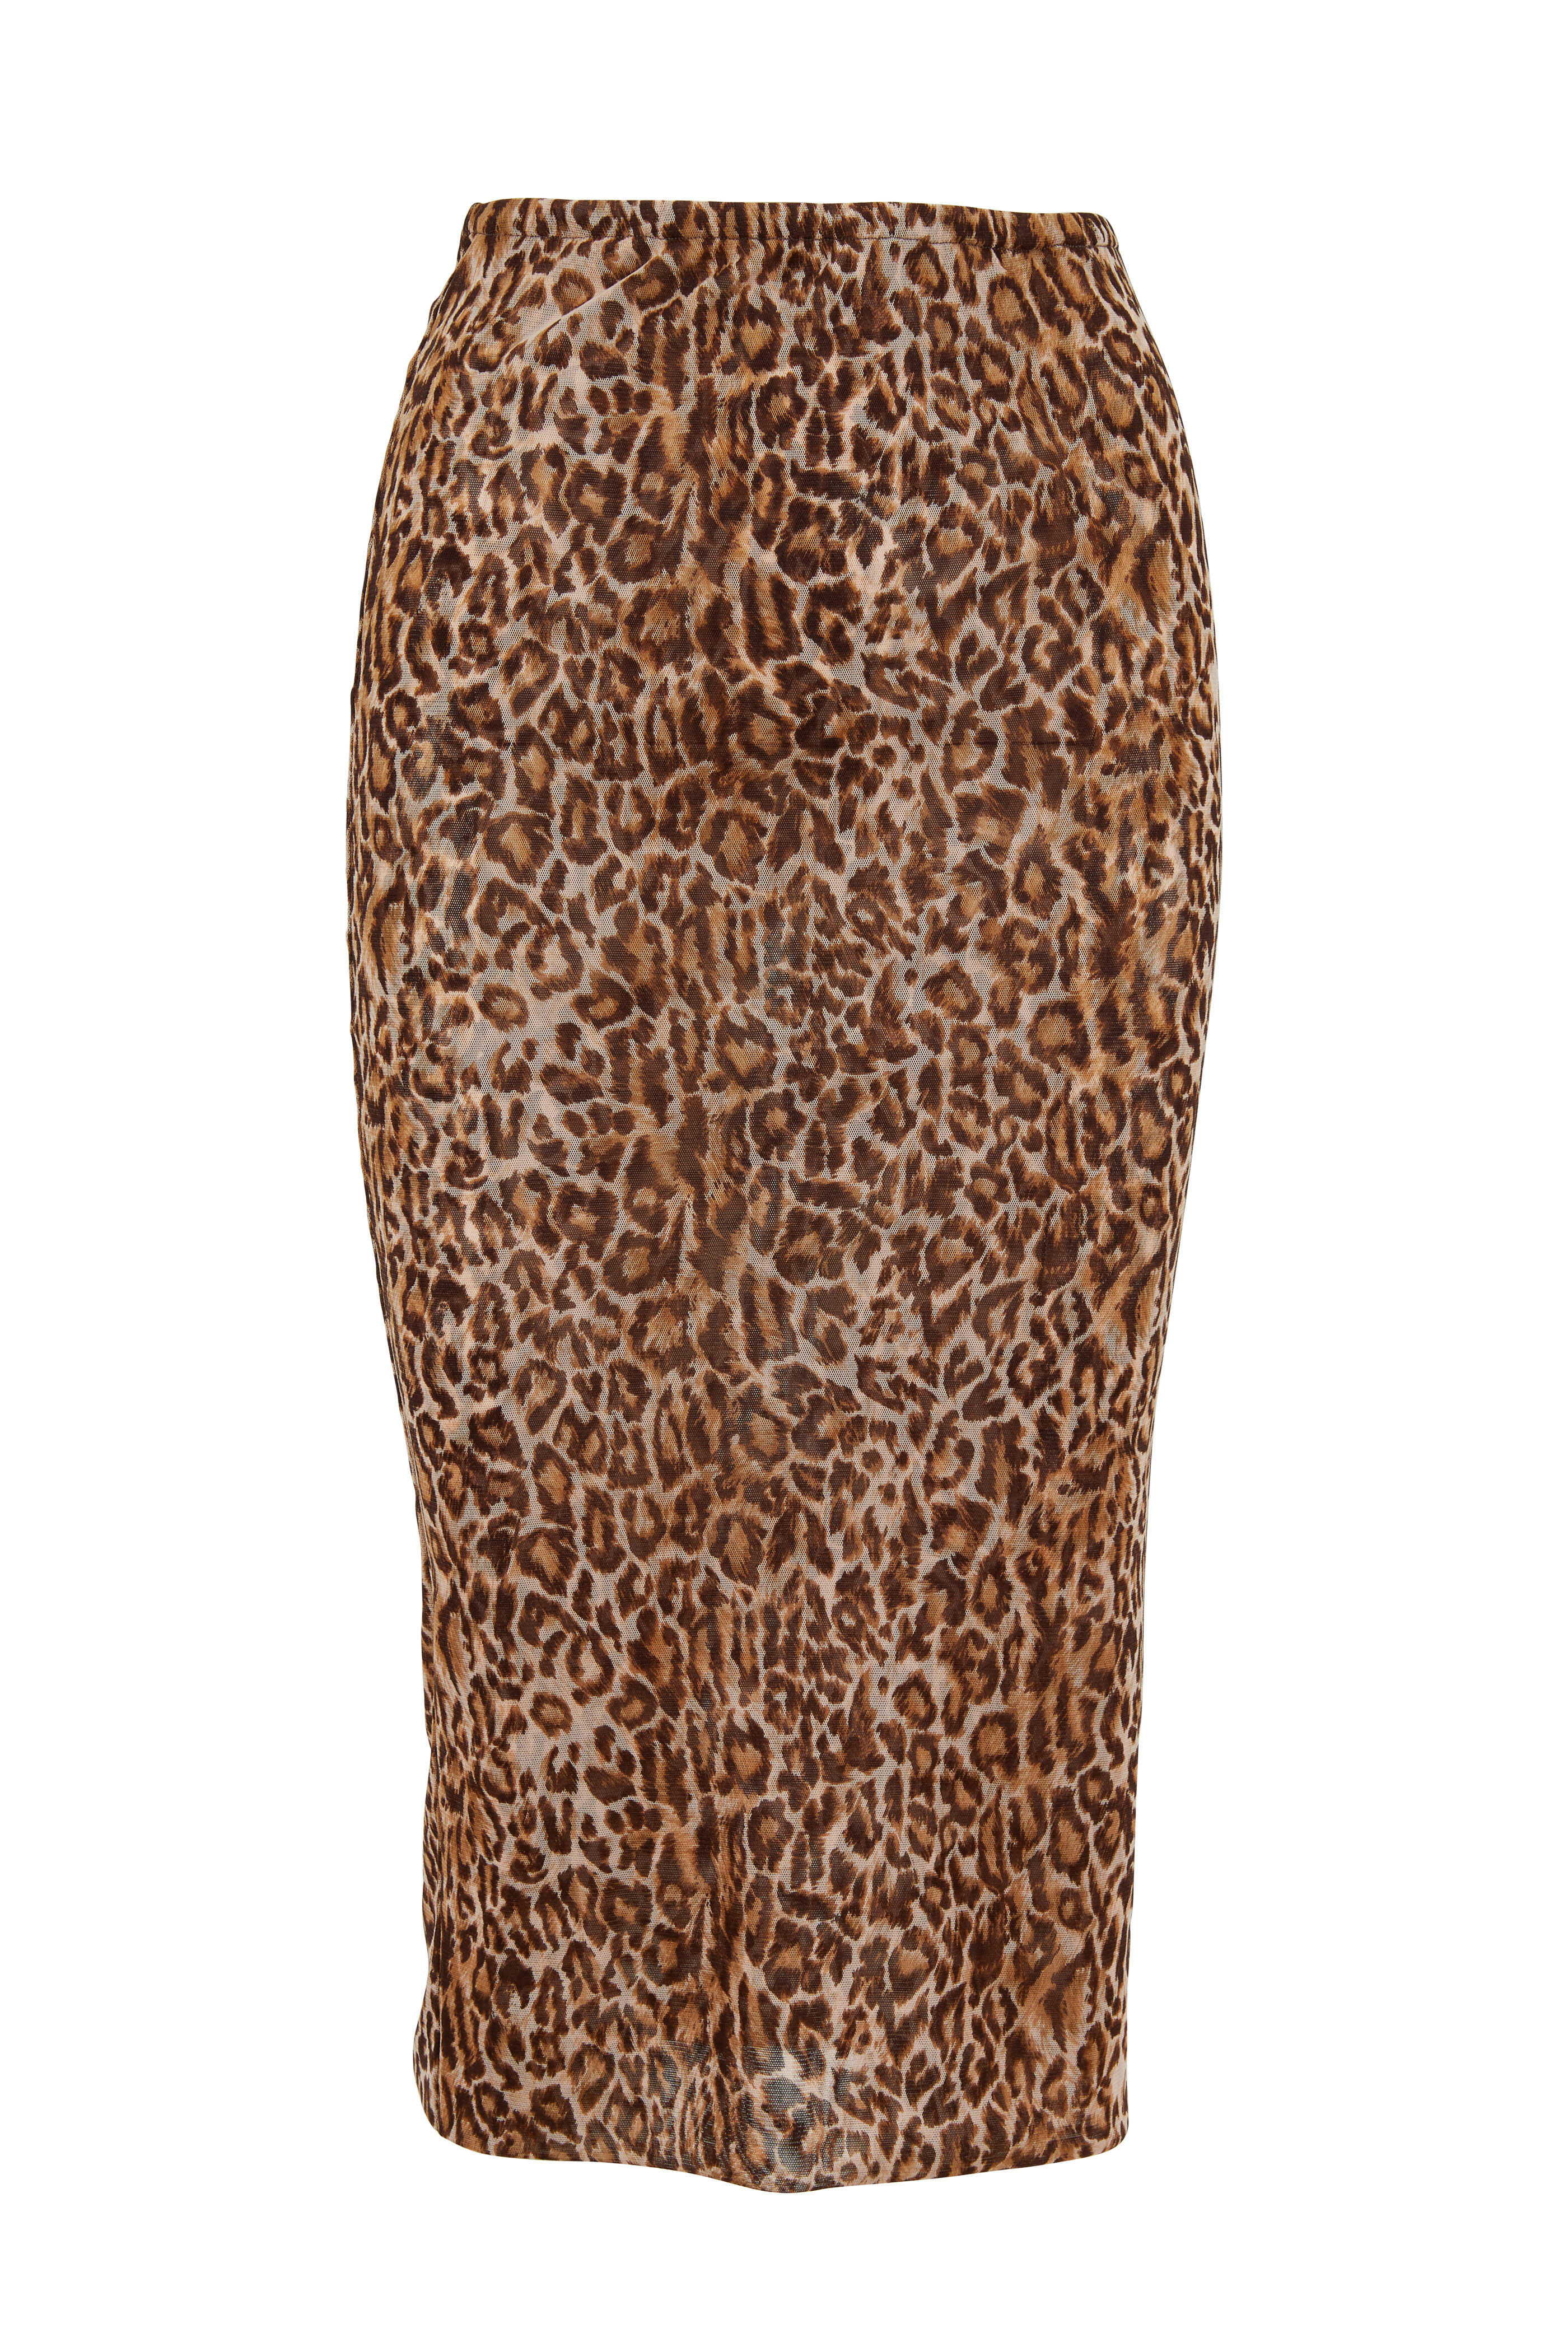 Peter Cohen - Copper Leopard Print Tulle Tube Skirt